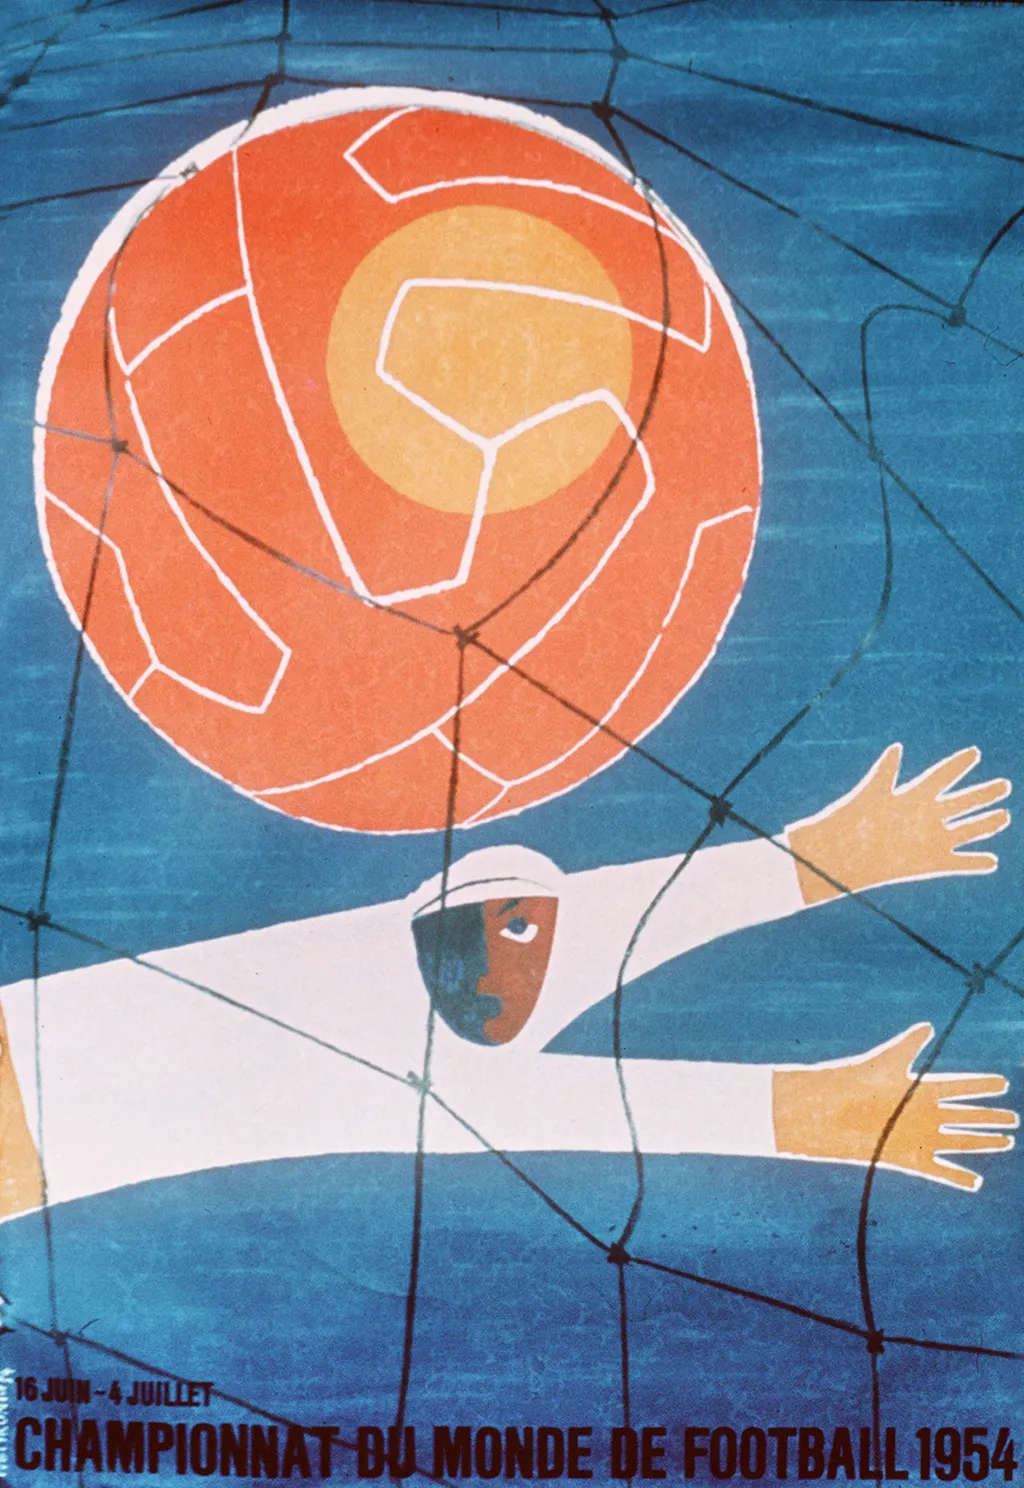 Labdarúgó-világbajnokság, labdarúgóvébé, futballvébé, labdarúgás, hivatalos plakát, poszter, 1954, Svájc 